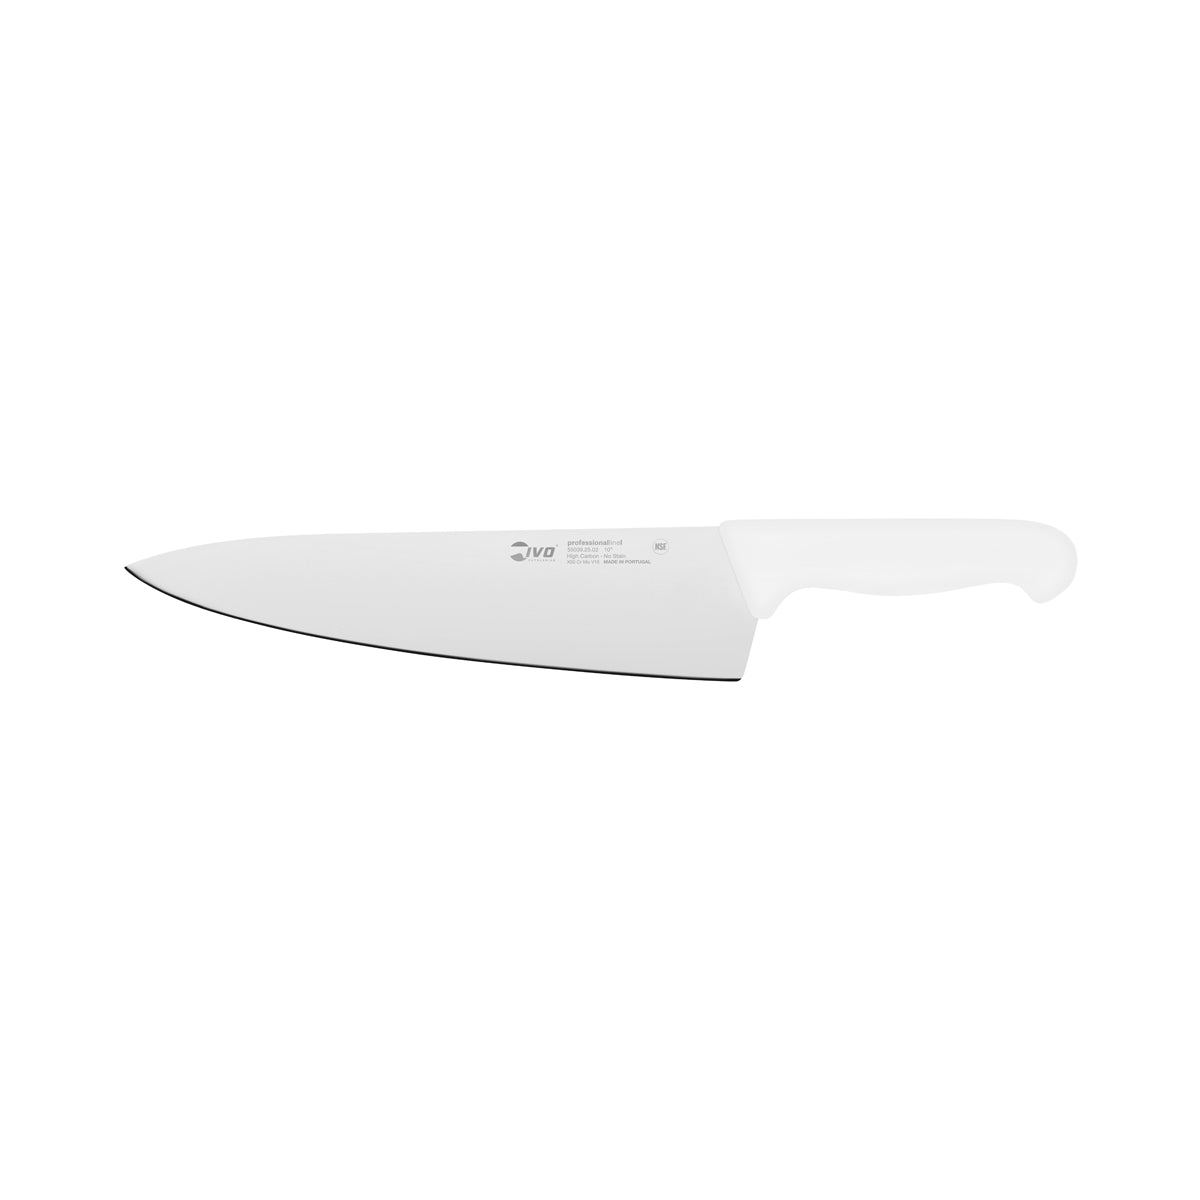 25477 Ivo Professional Line I Chefs Knife White 250mm Tomkin Australia Hospitality Supplies